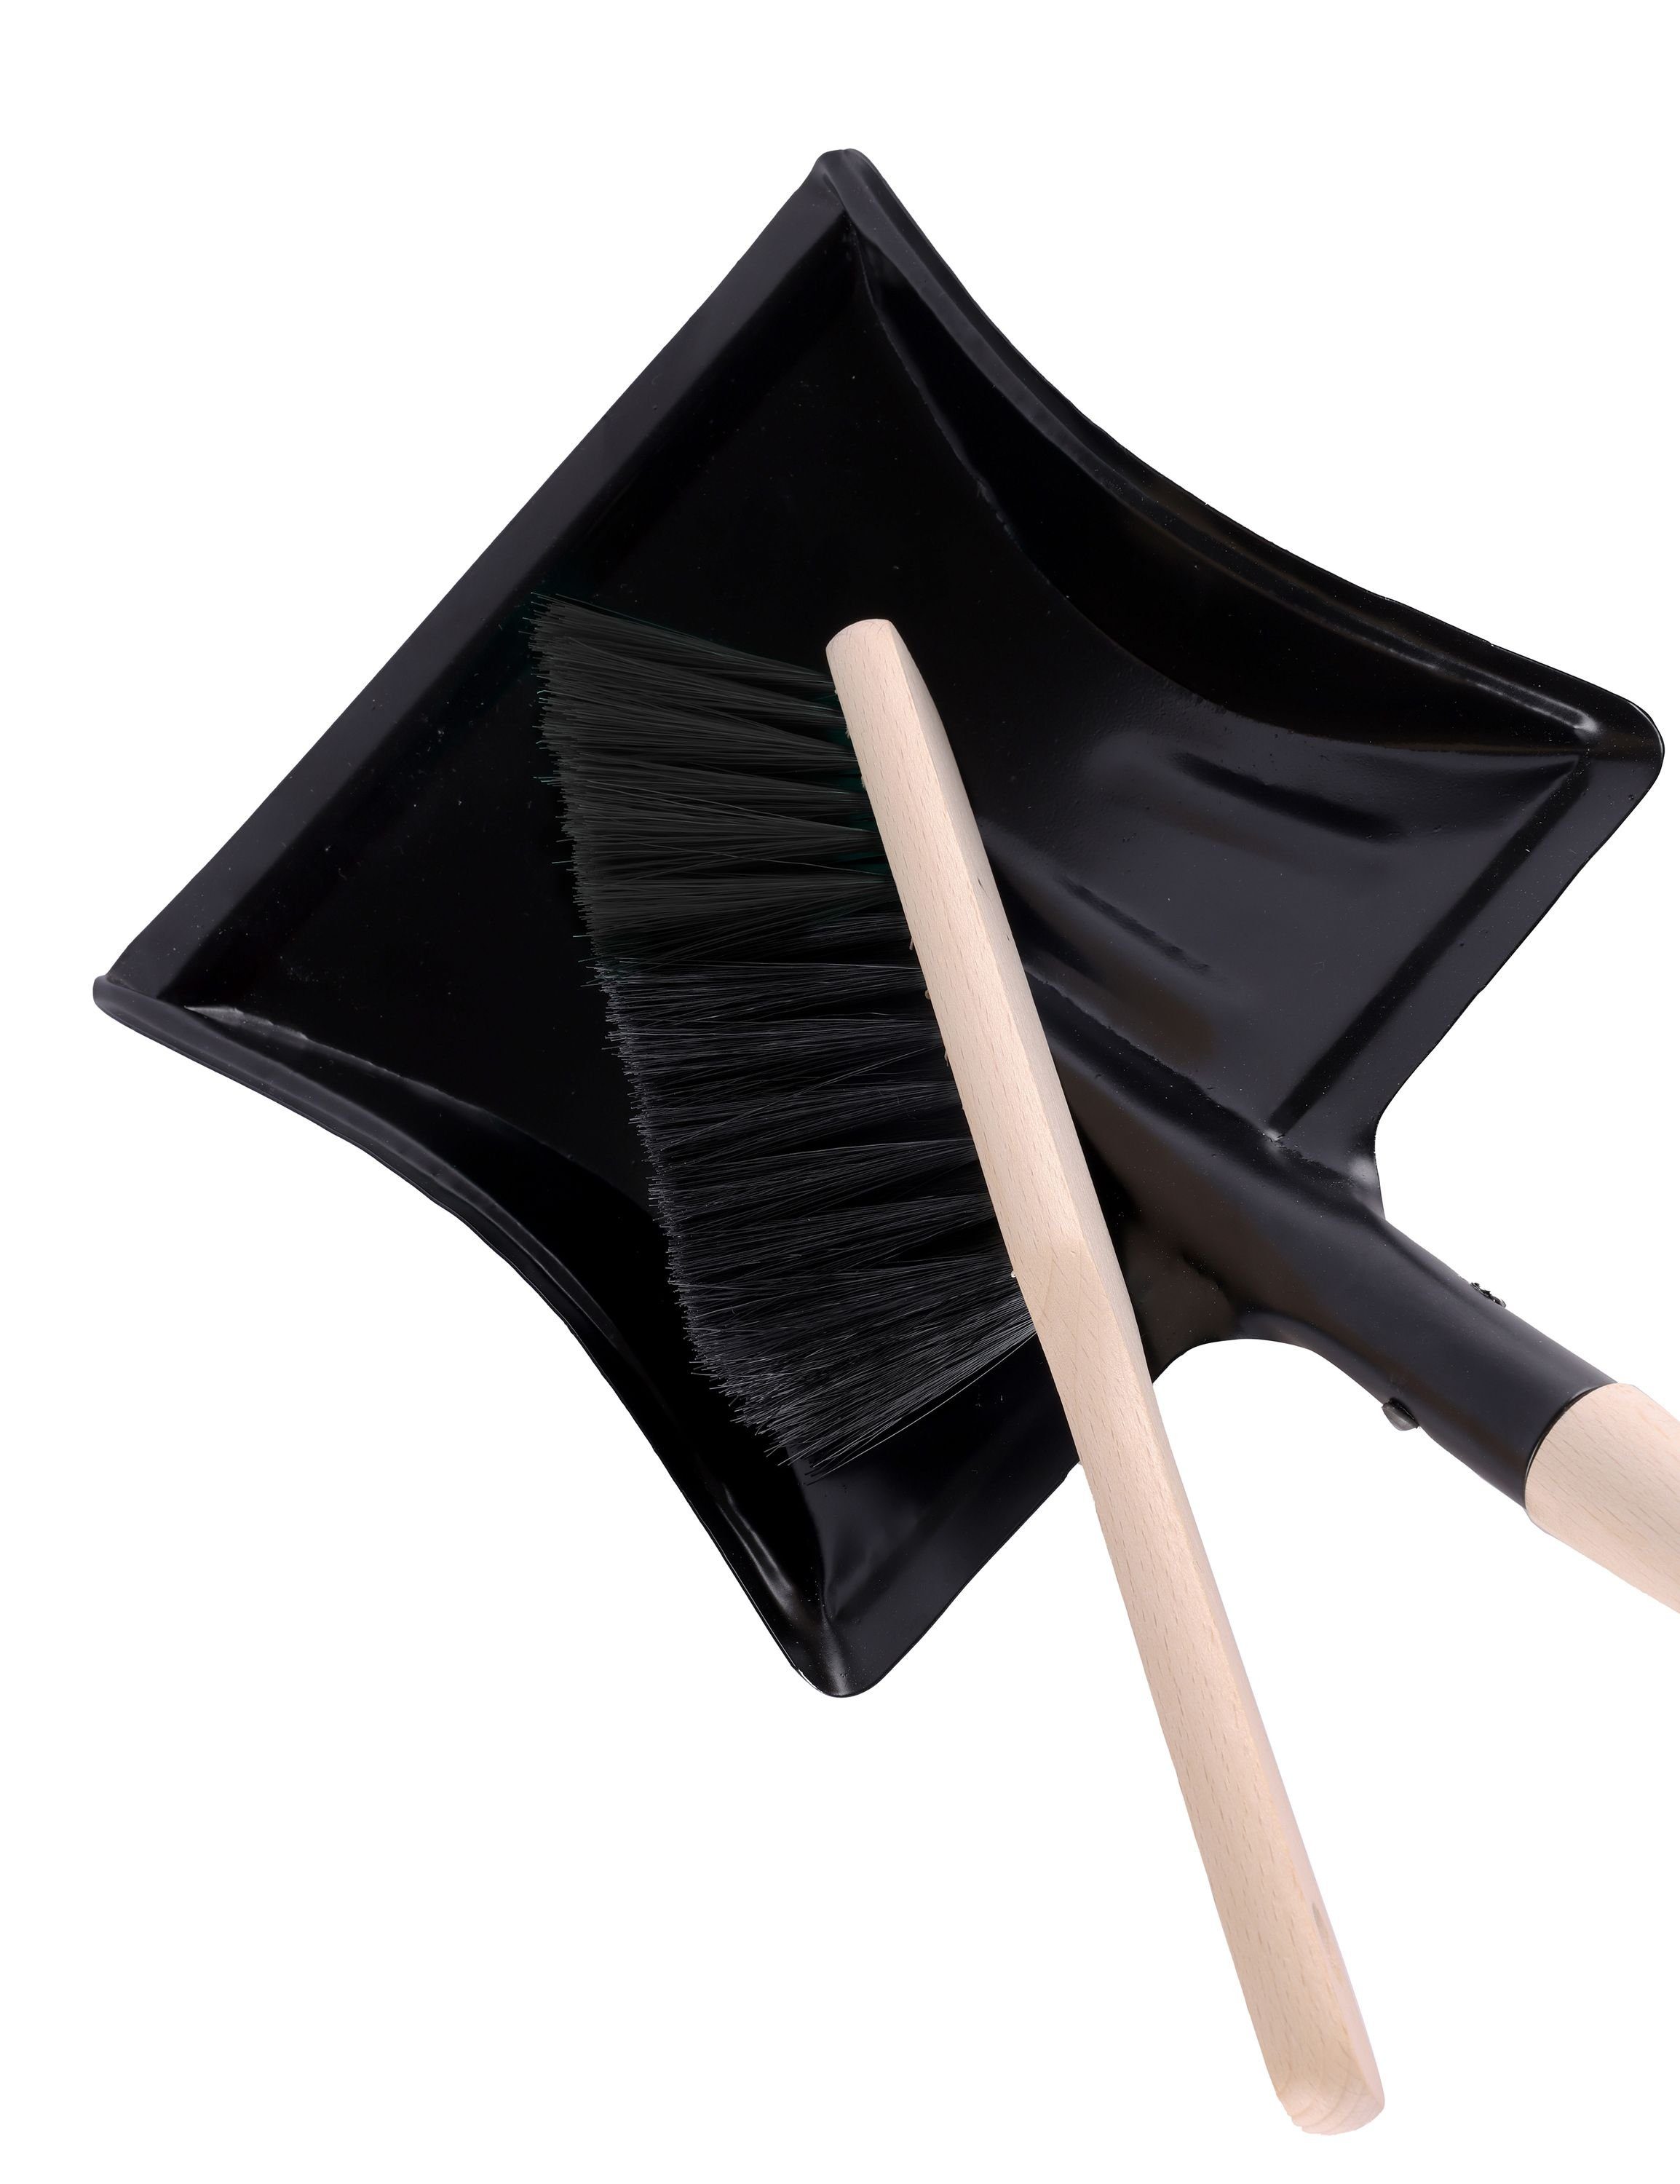 Metall Handbesen Garronda Reinigungsbürsten-Set Kehrichtschaufel mit PET Holzgriff) Kehrschaufel Schwarz (Kehrschaufel einem GD-0010, Kehrblech